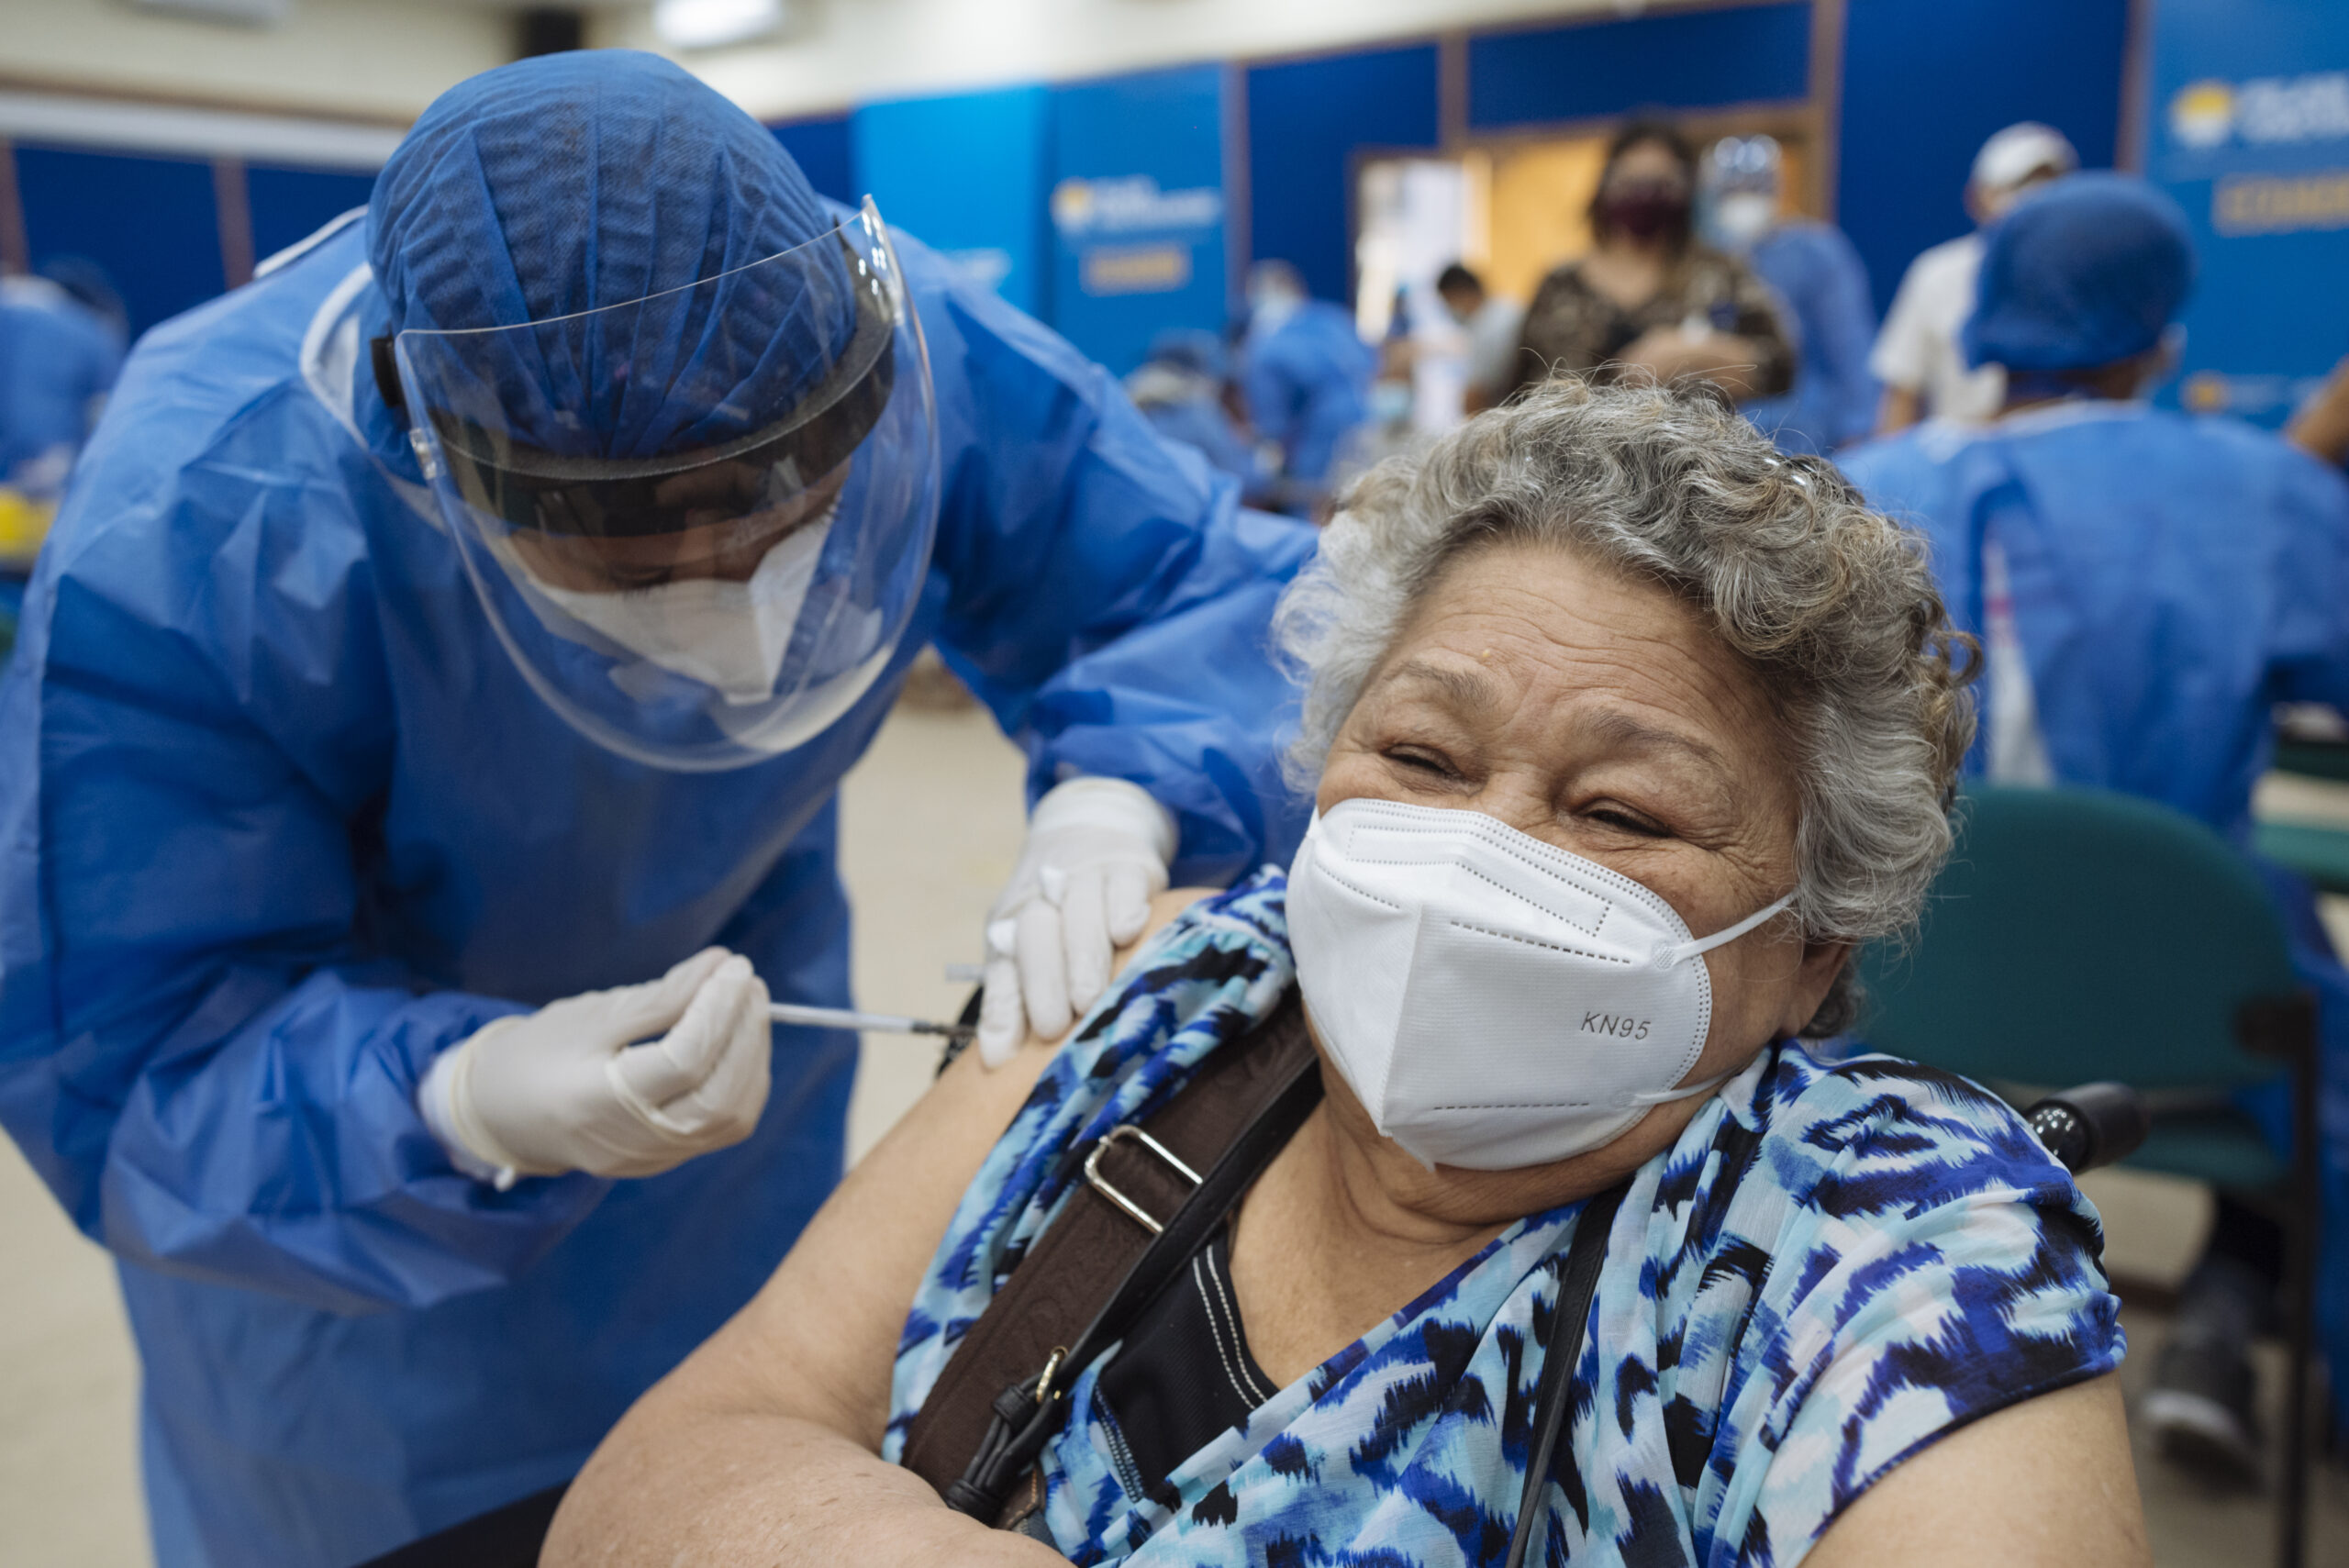 Angela del Valle (76), uit Venezuela, ontvangt haar eerste spuitje van het COVID-19 vaccin in Guayaquil, Ecuador. Haar vaccinatie en die van vele andere oudere vluchtelingen en migranten werd gesteund door de UNHCR. © UNHCR/Santiago Arcos